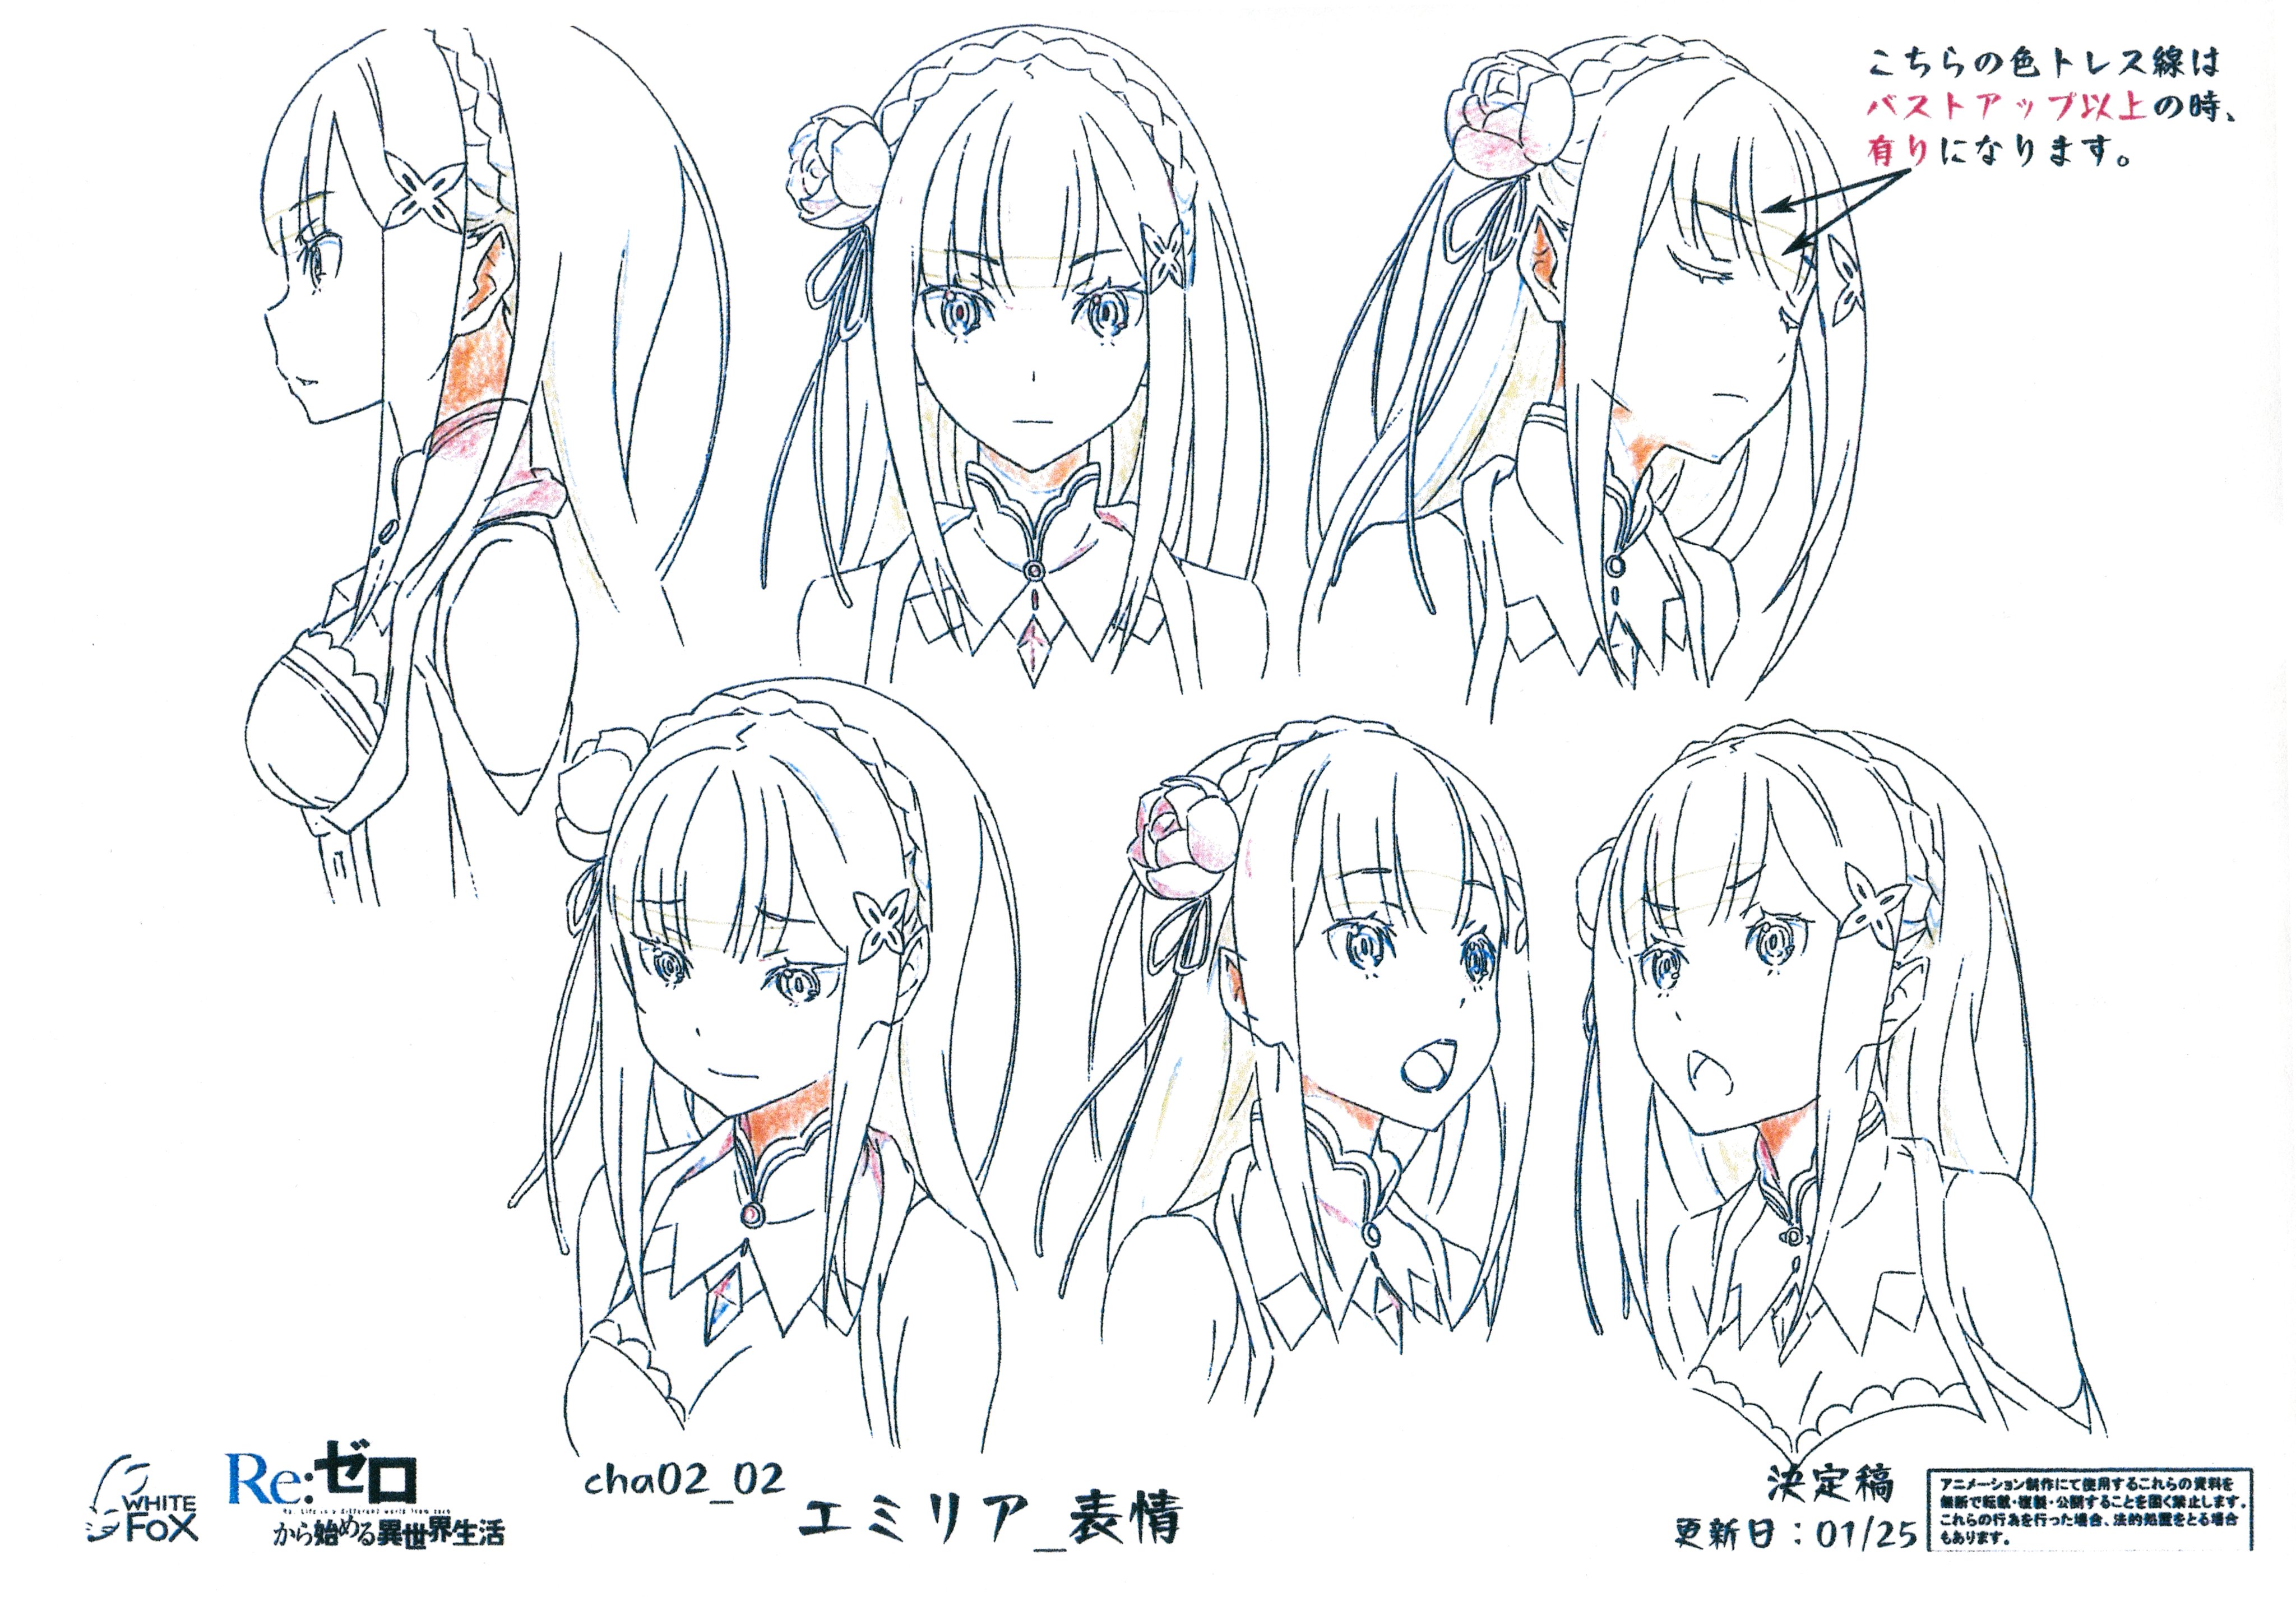 drawing anime girl - Emilia エミリア - [ Re:Zero kara Hajimeru Isekai Seikatsu  ] 